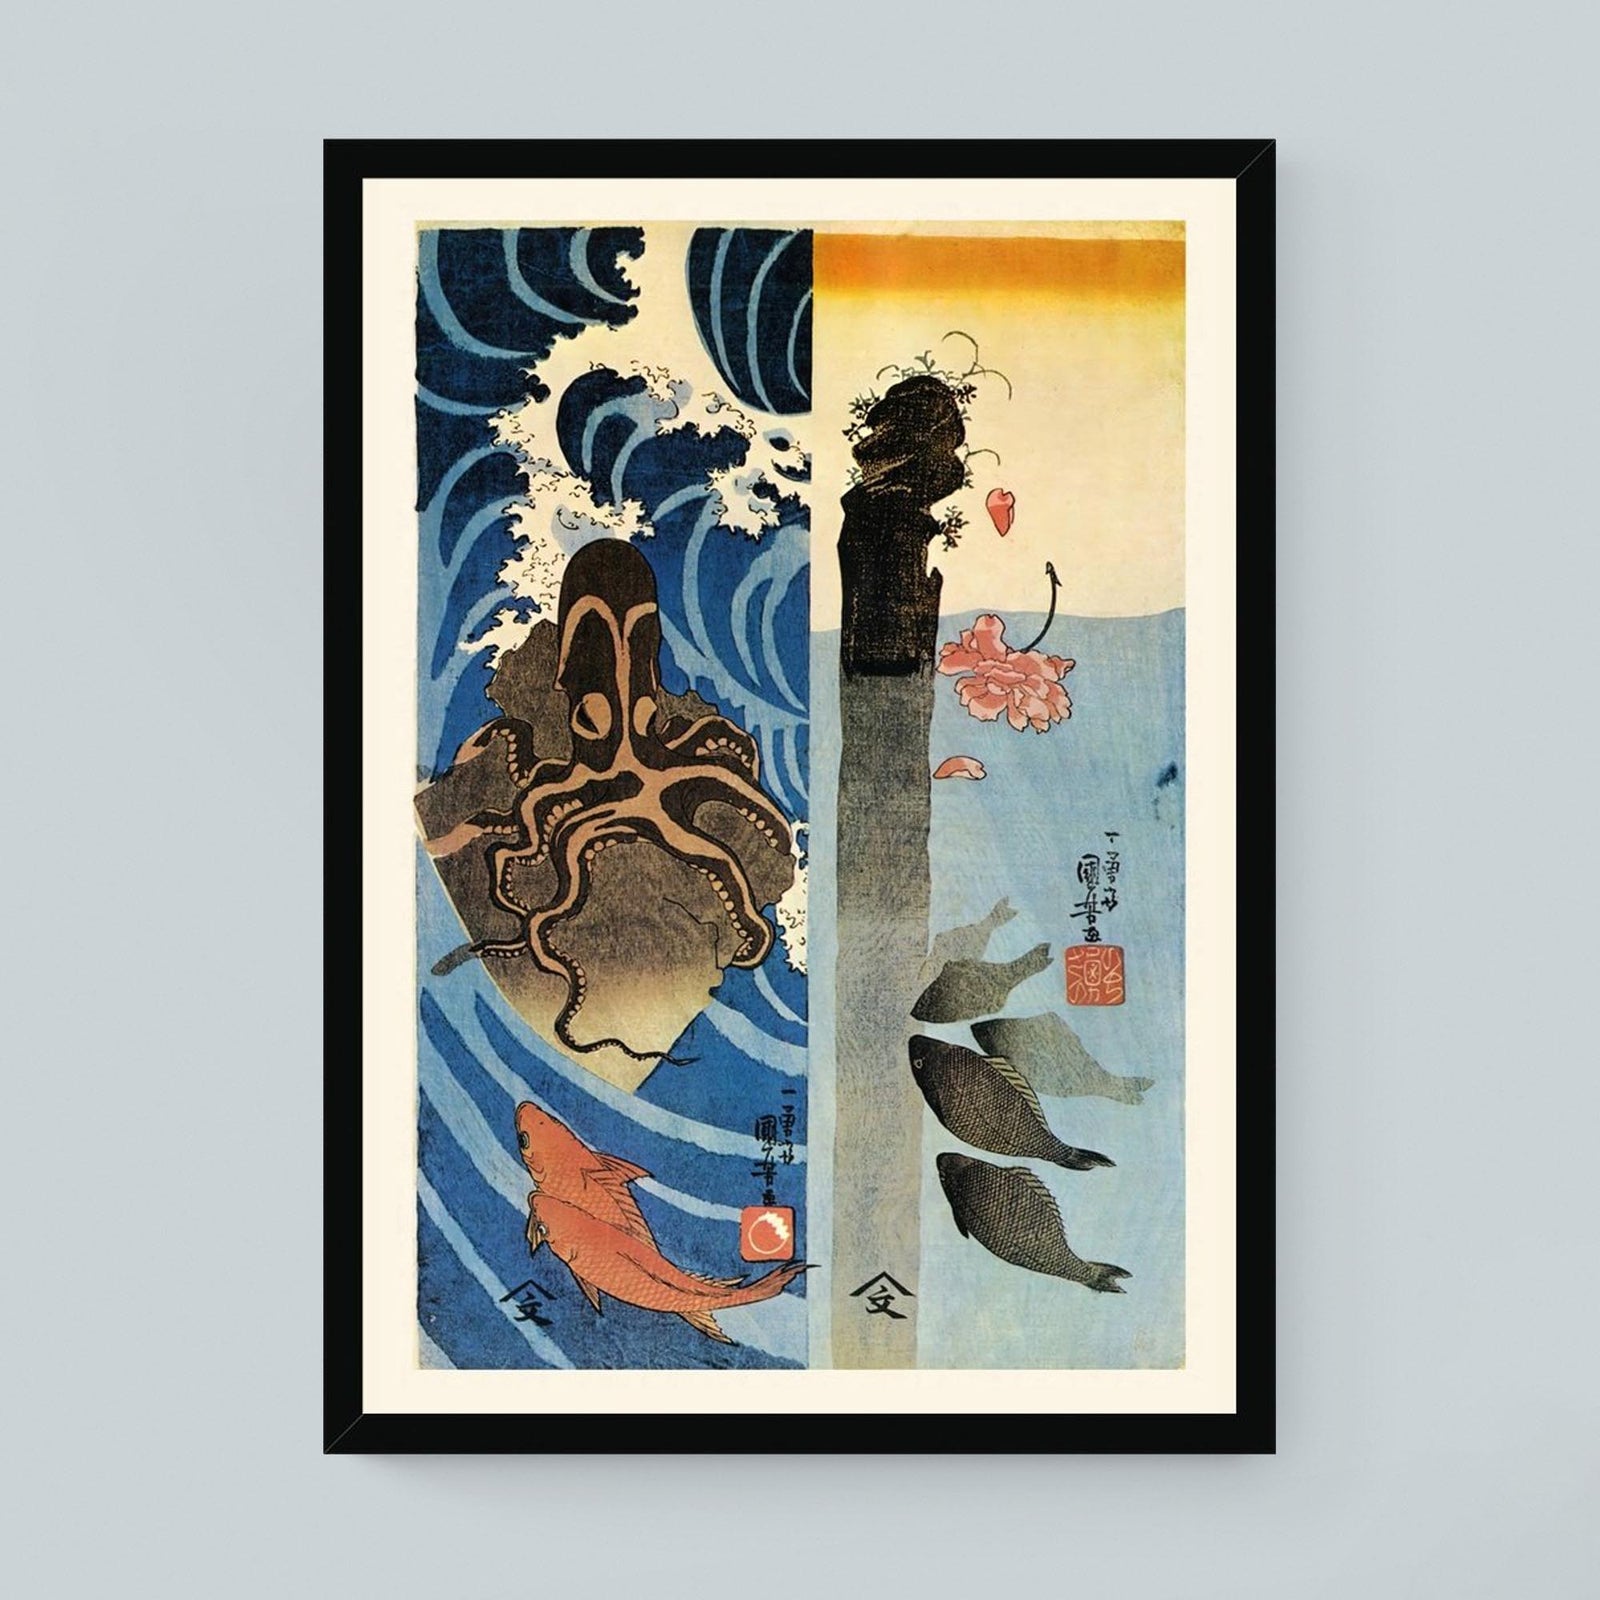 Framed Print 8"x12" / Black Frame Kuniyoshi Utagawa, Octopus, Red Fish Ukiyo-e Antique Vintage Woodblock Japan Botanical Marine Life Cephalopod Framed Art Print